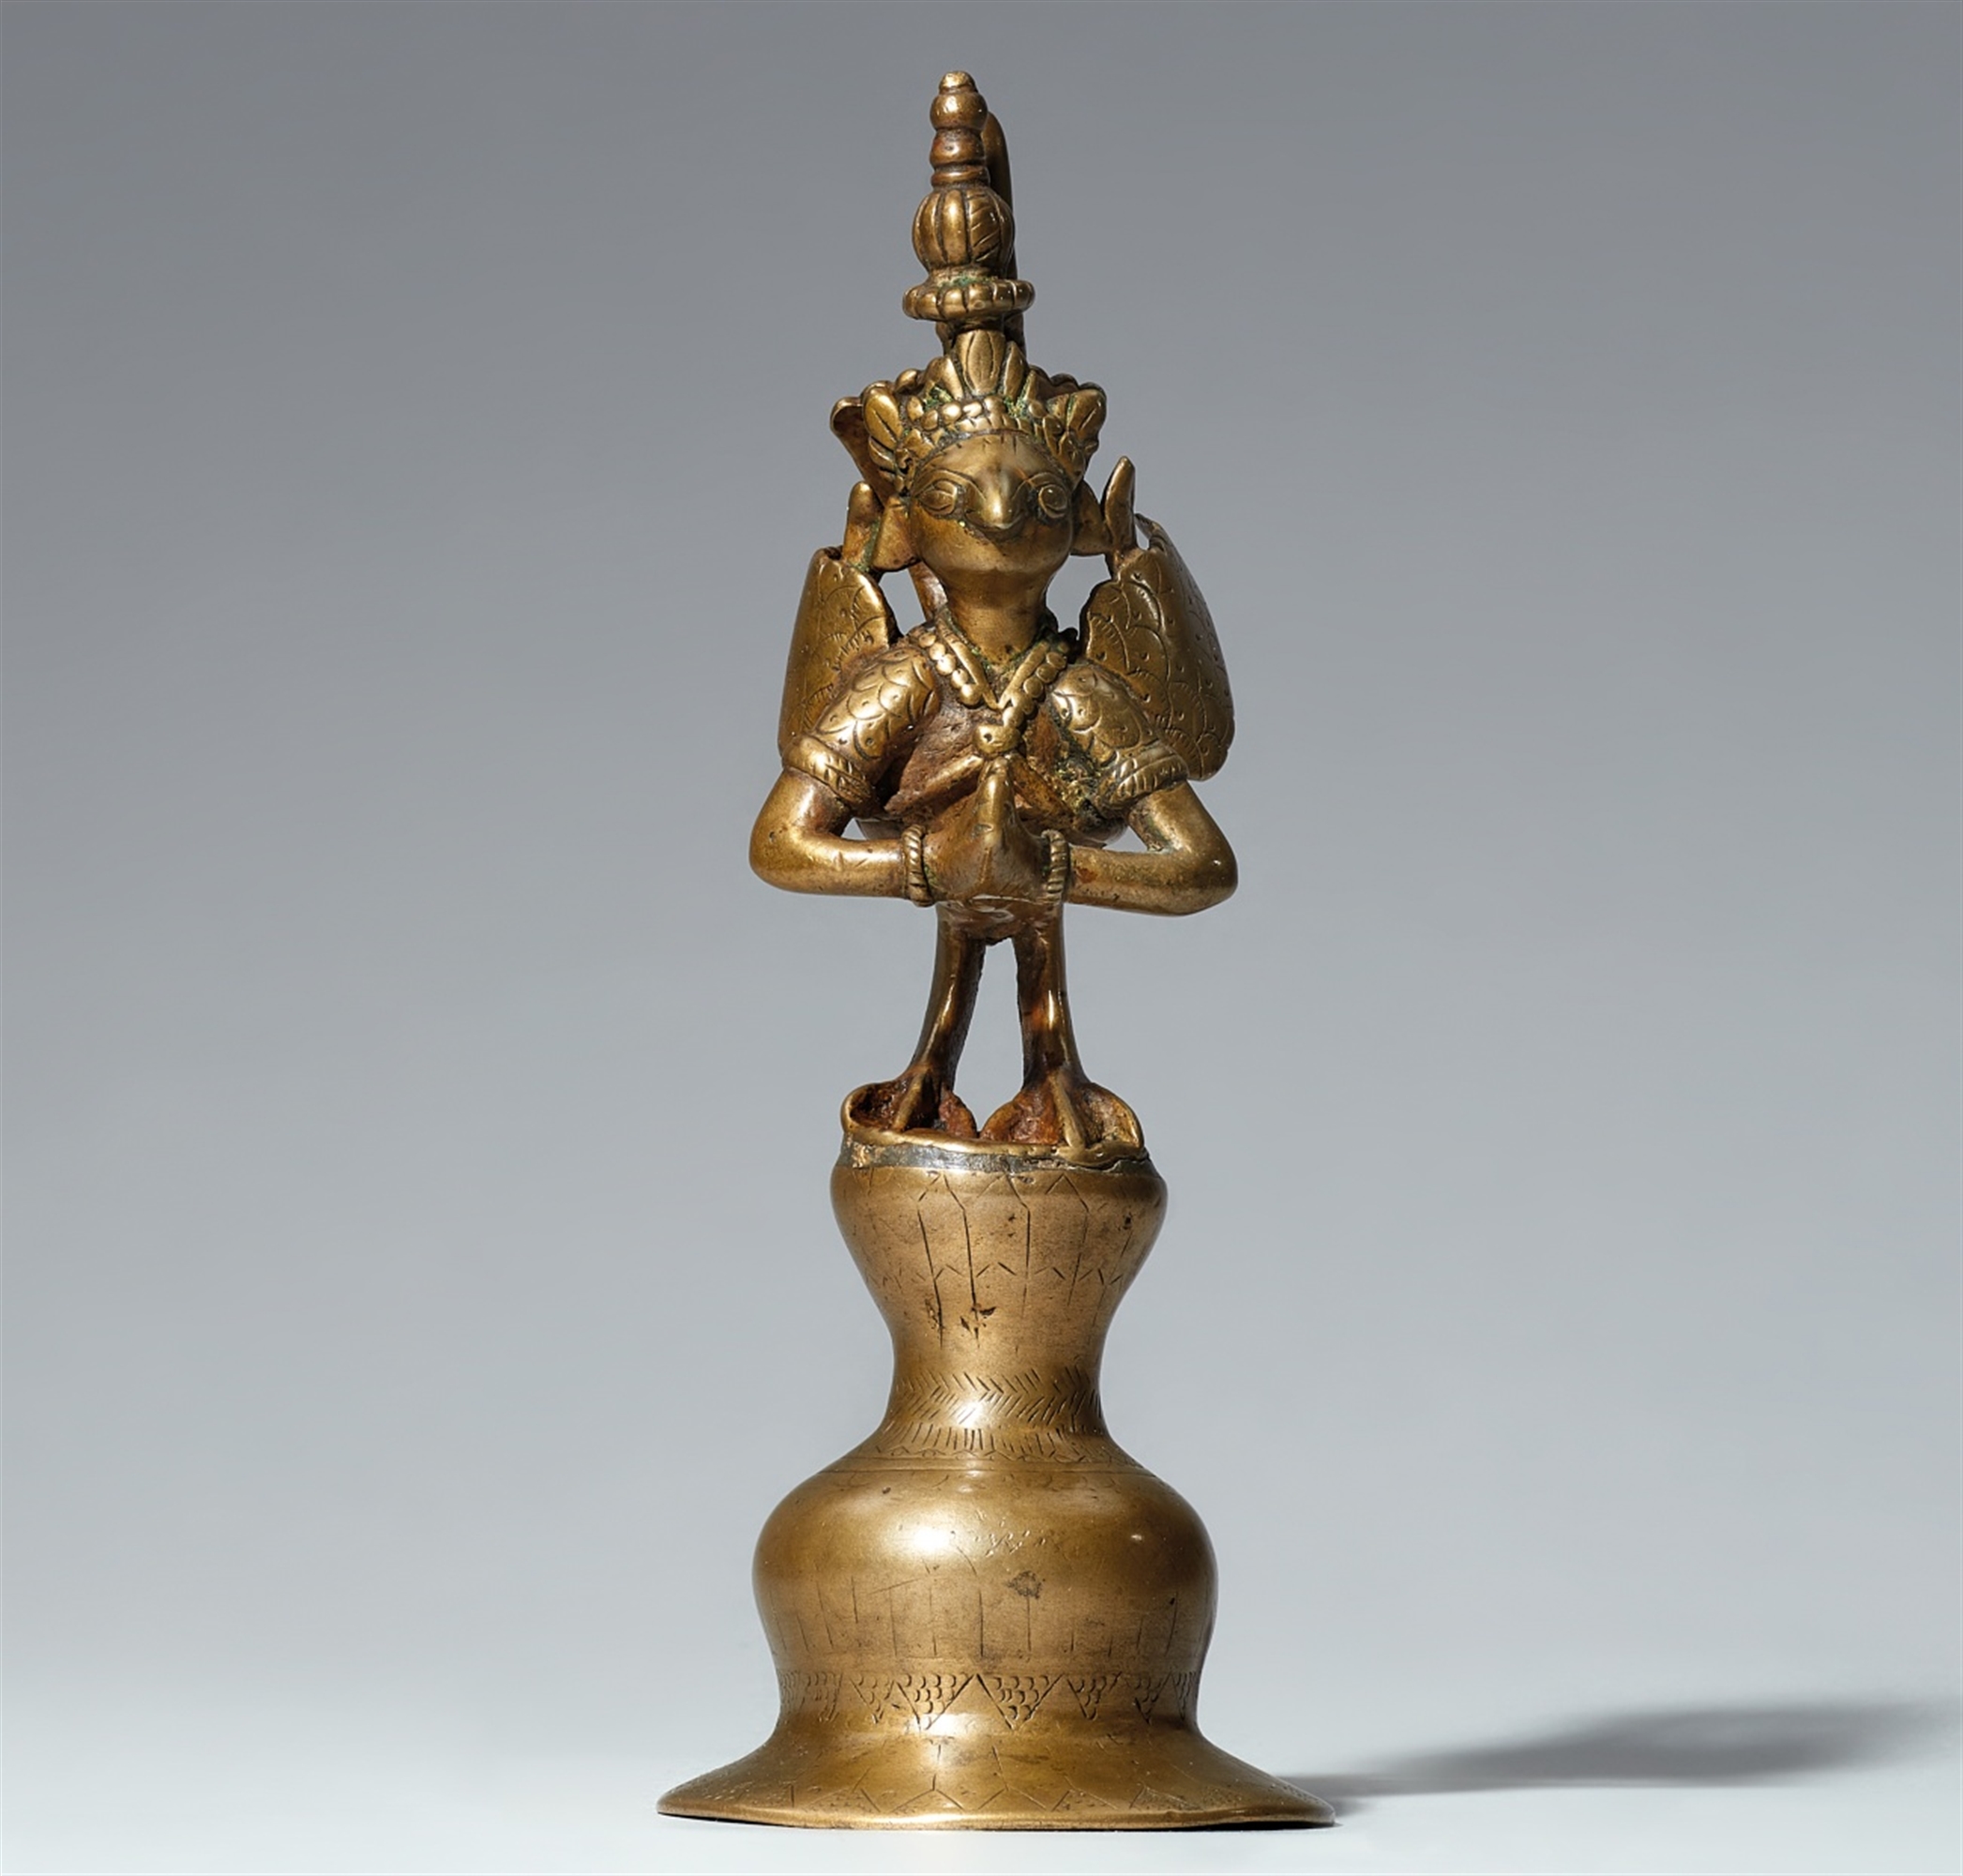 A Deccani brass figure of Garuda. Central India. 18th/19th century